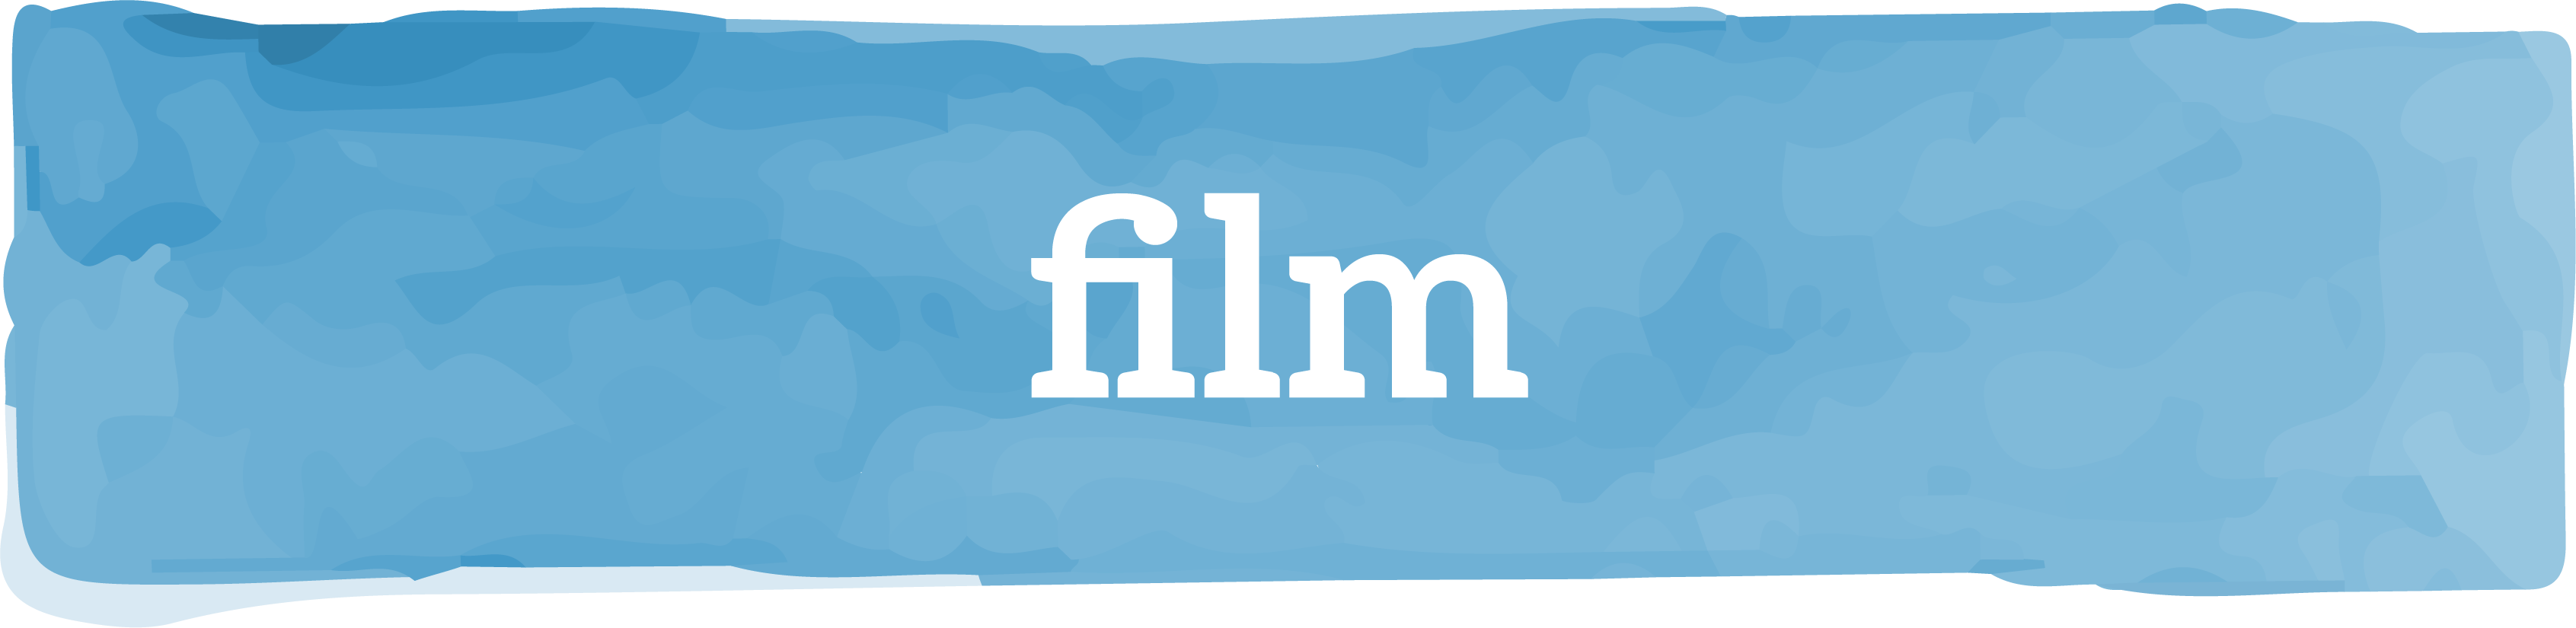 film-header